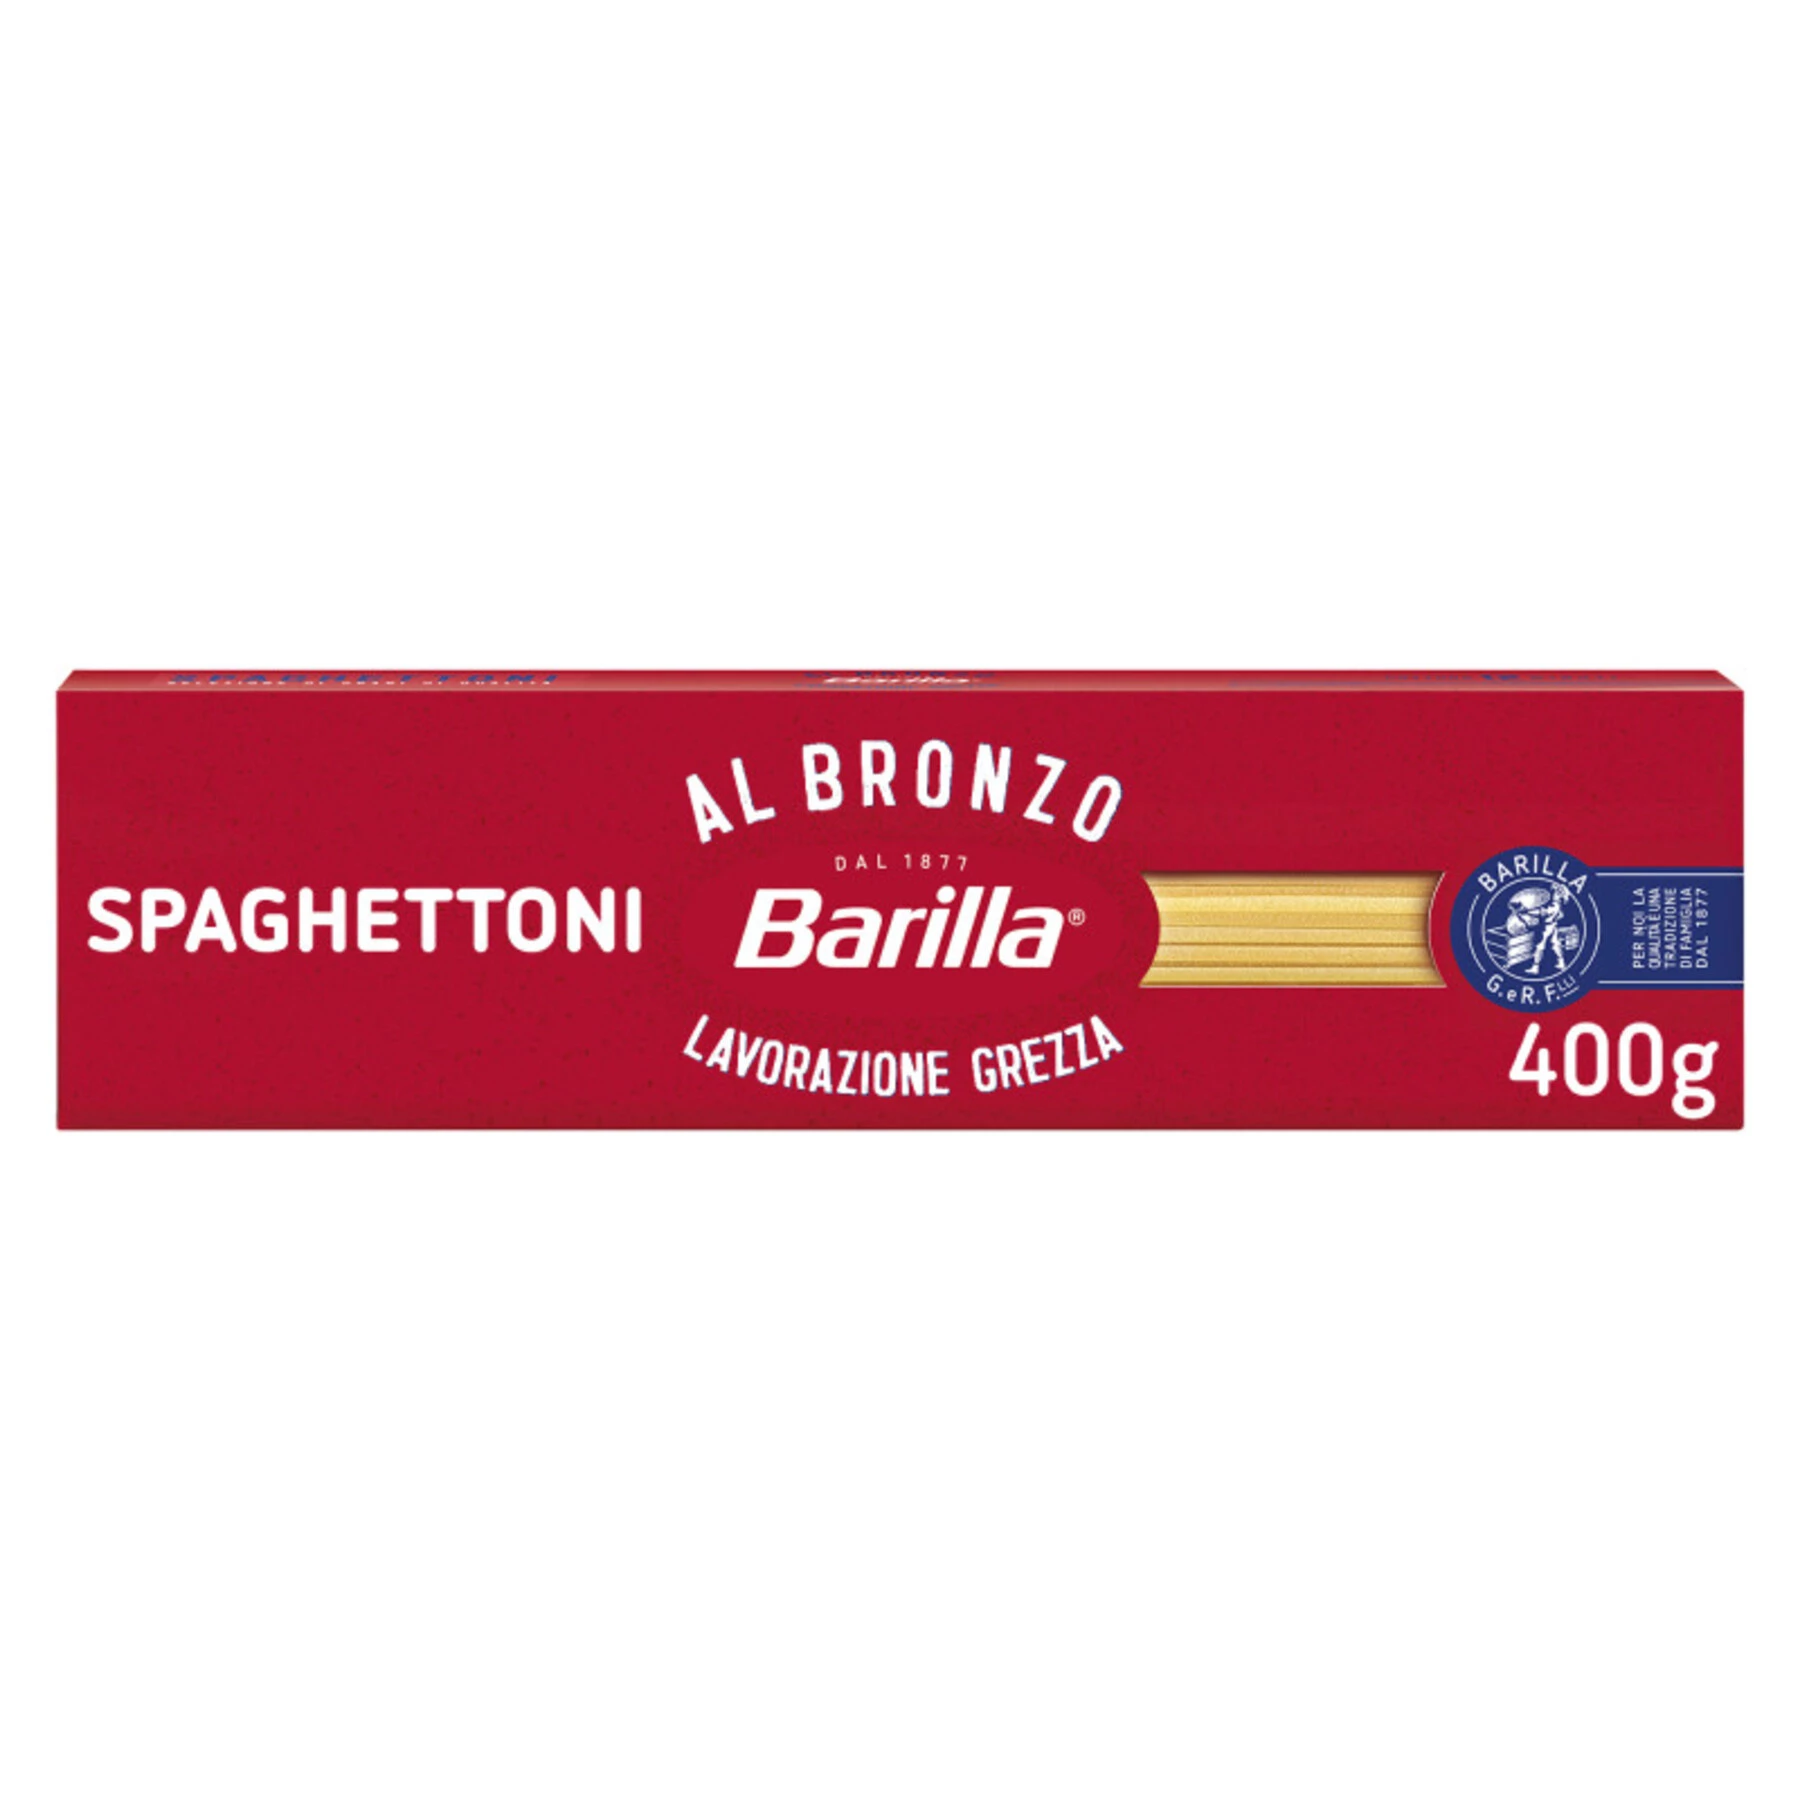 Pate spaghettoni al bronzo 400G - BARILLA